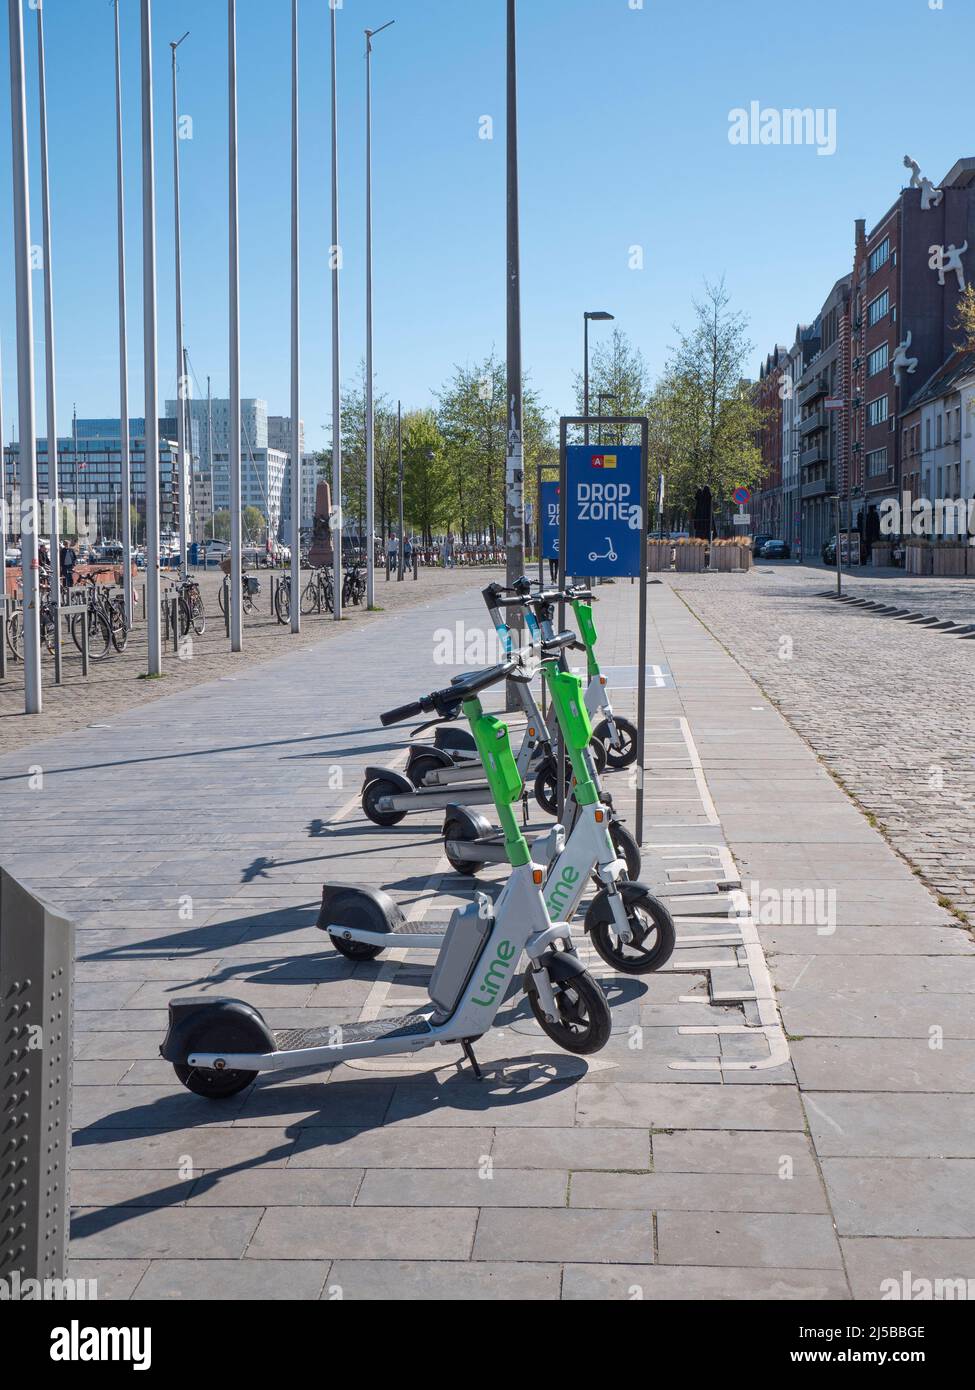 Anversa, Belgio, 17 aprile 2020, Condividi gli scooter nella città di Anversa in una zona di caduta Foto Stock